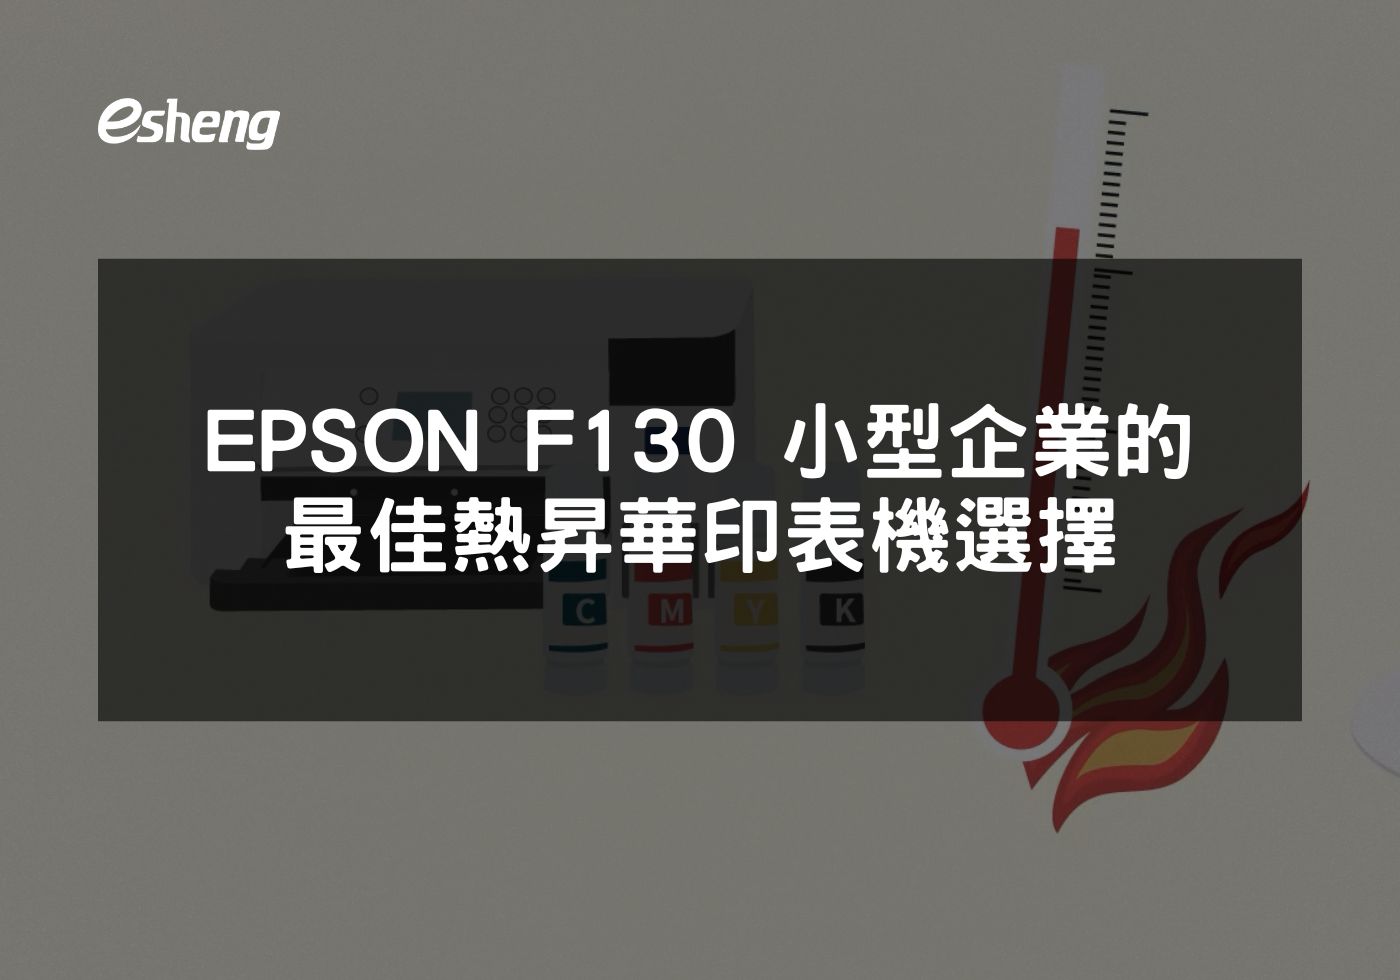 閱讀更多文章 EPSON F130 小型企業的最佳熱昇華印表機選擇